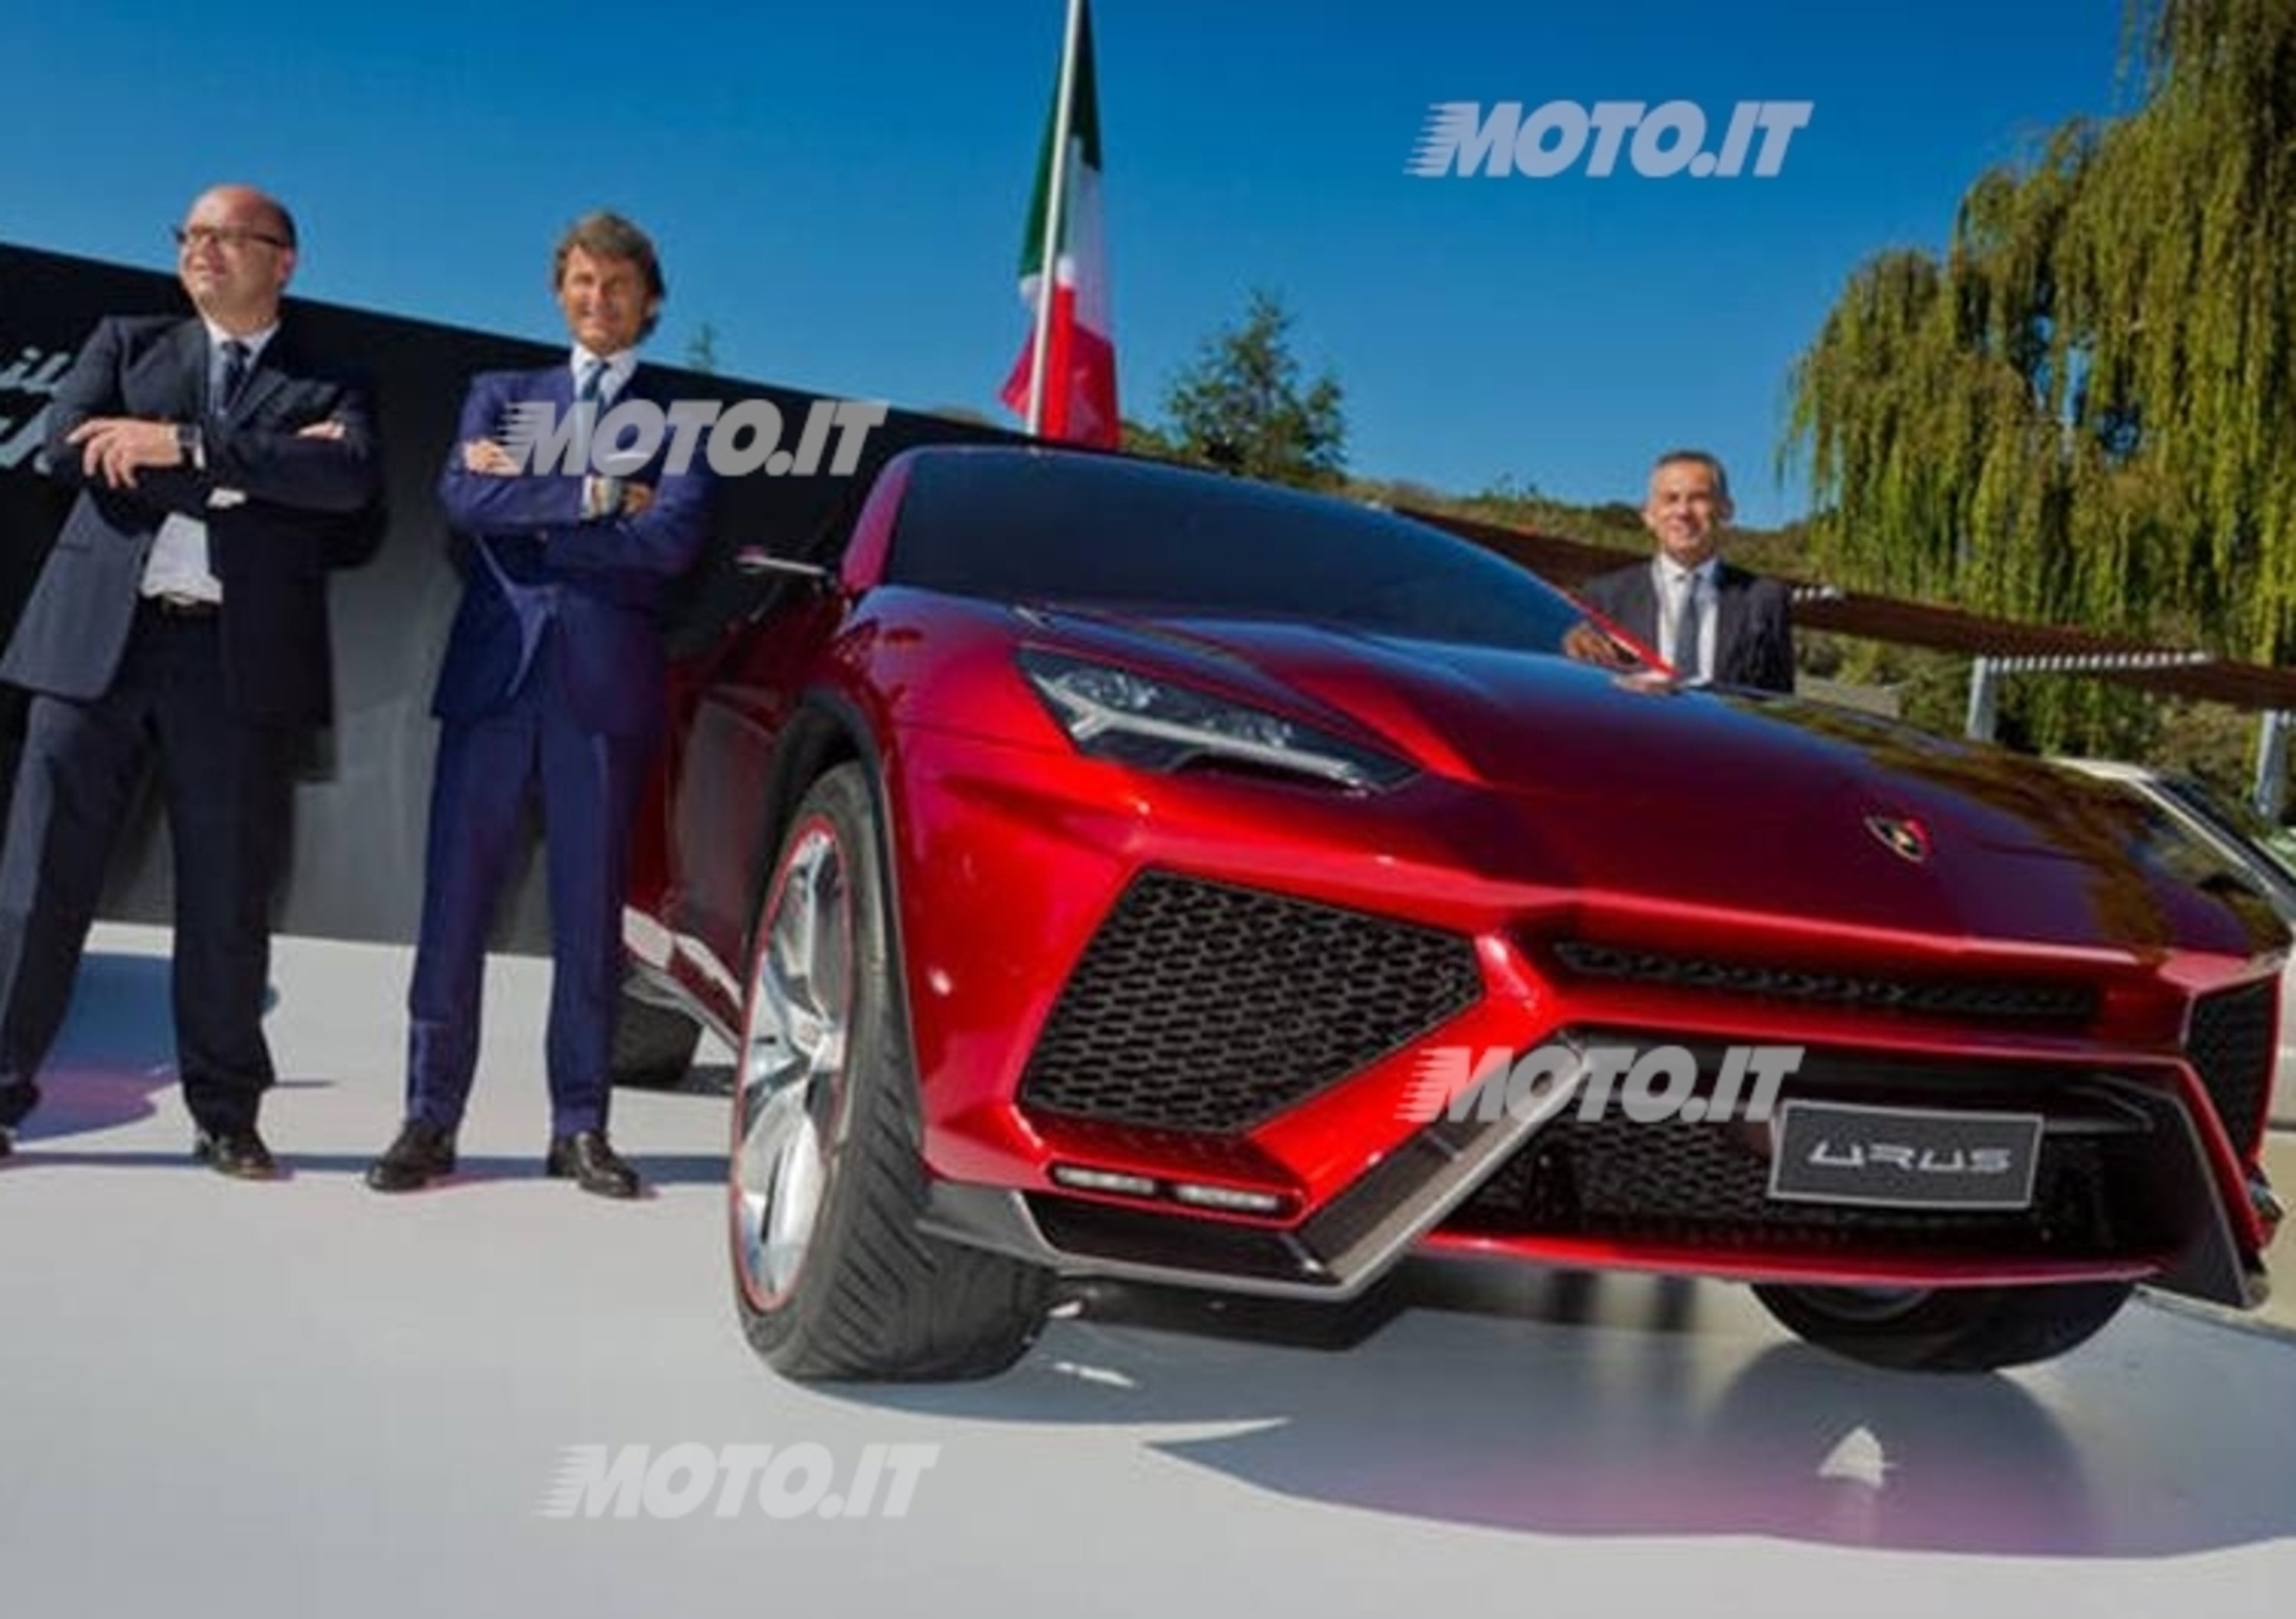 Lamborghini annuncia i festeggiamenti per il 50&deg; anniversario